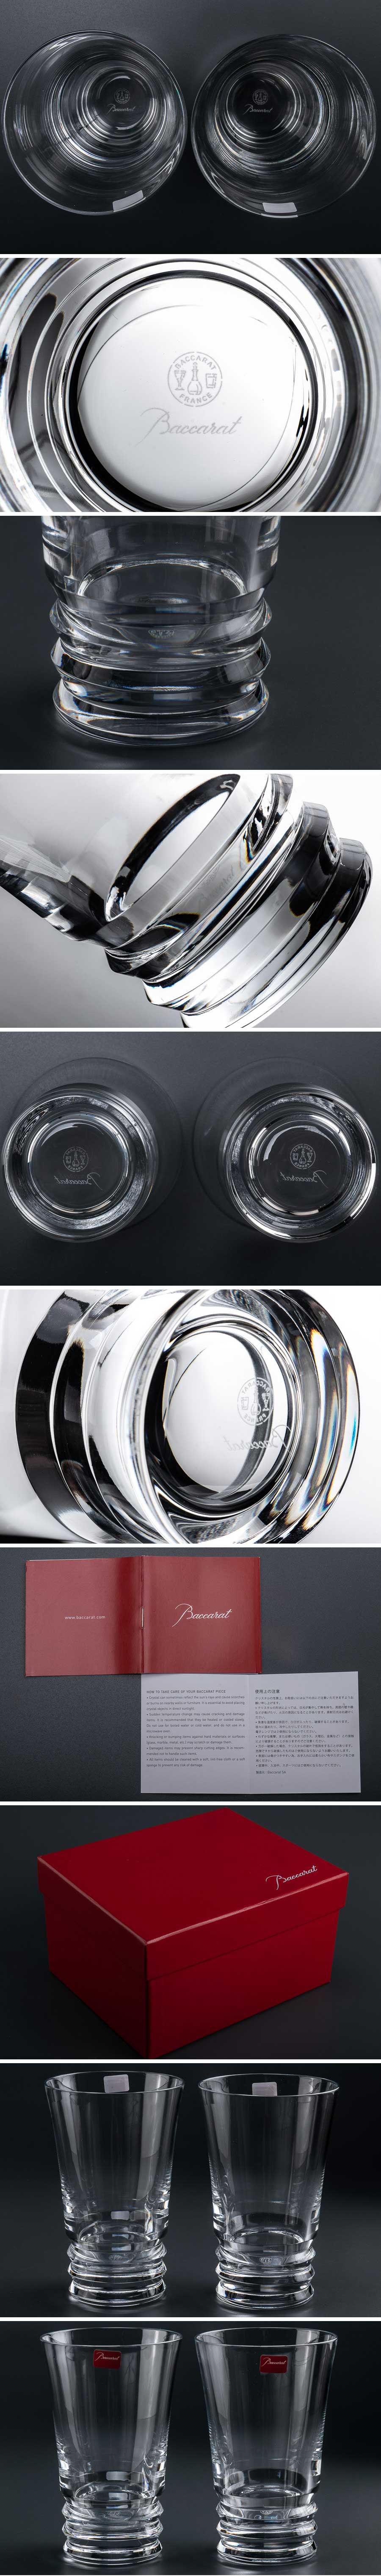 新作正規品『 Baccarat バカラ ベガ ハイボールグラス 2客 箱付 7806 』 2個組 洋食器 ブランド テーブルウェア クリスタルガラス 工芸ガラス